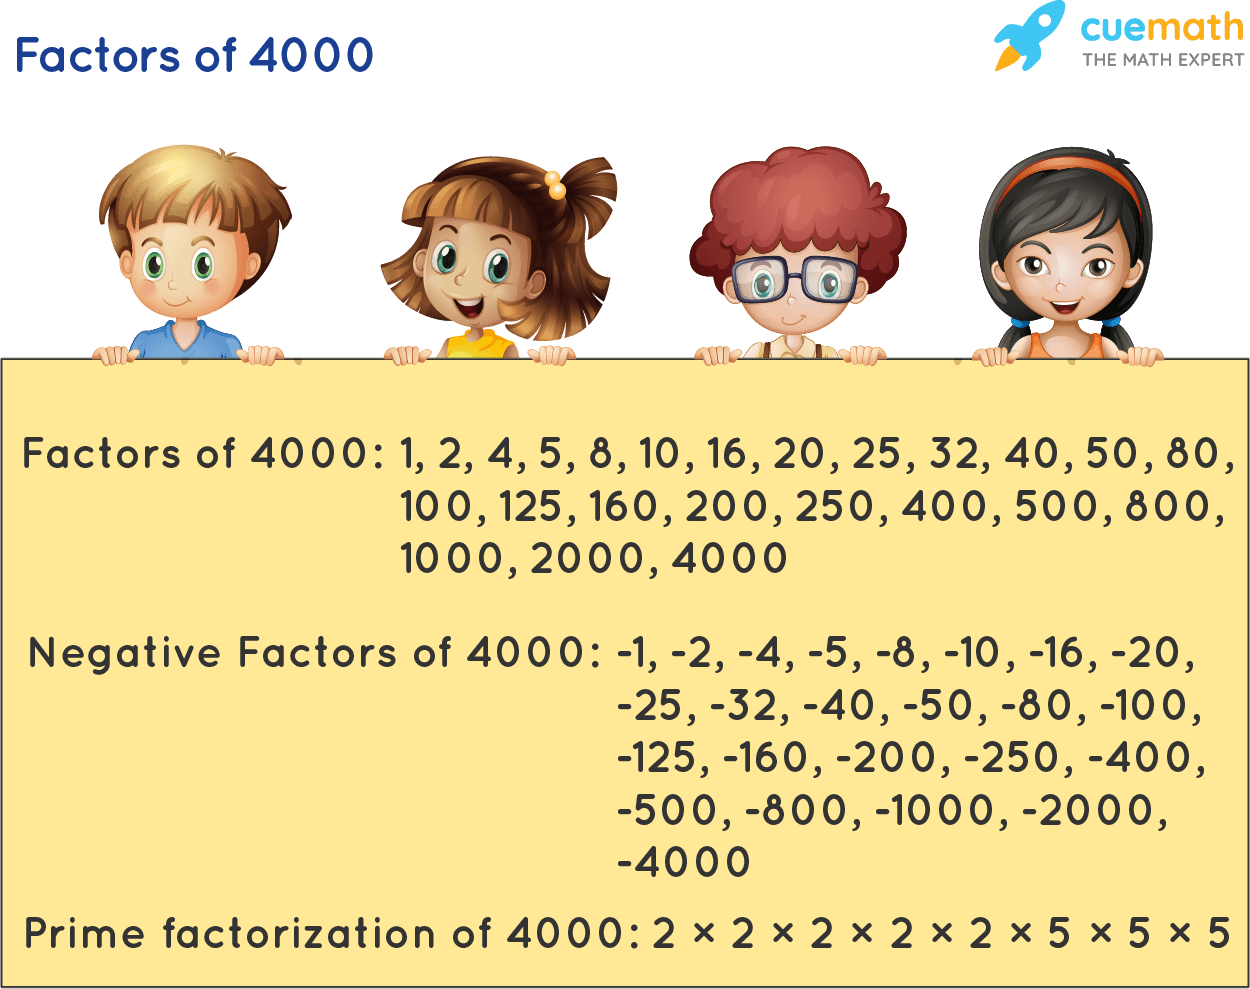 Factors of 4000